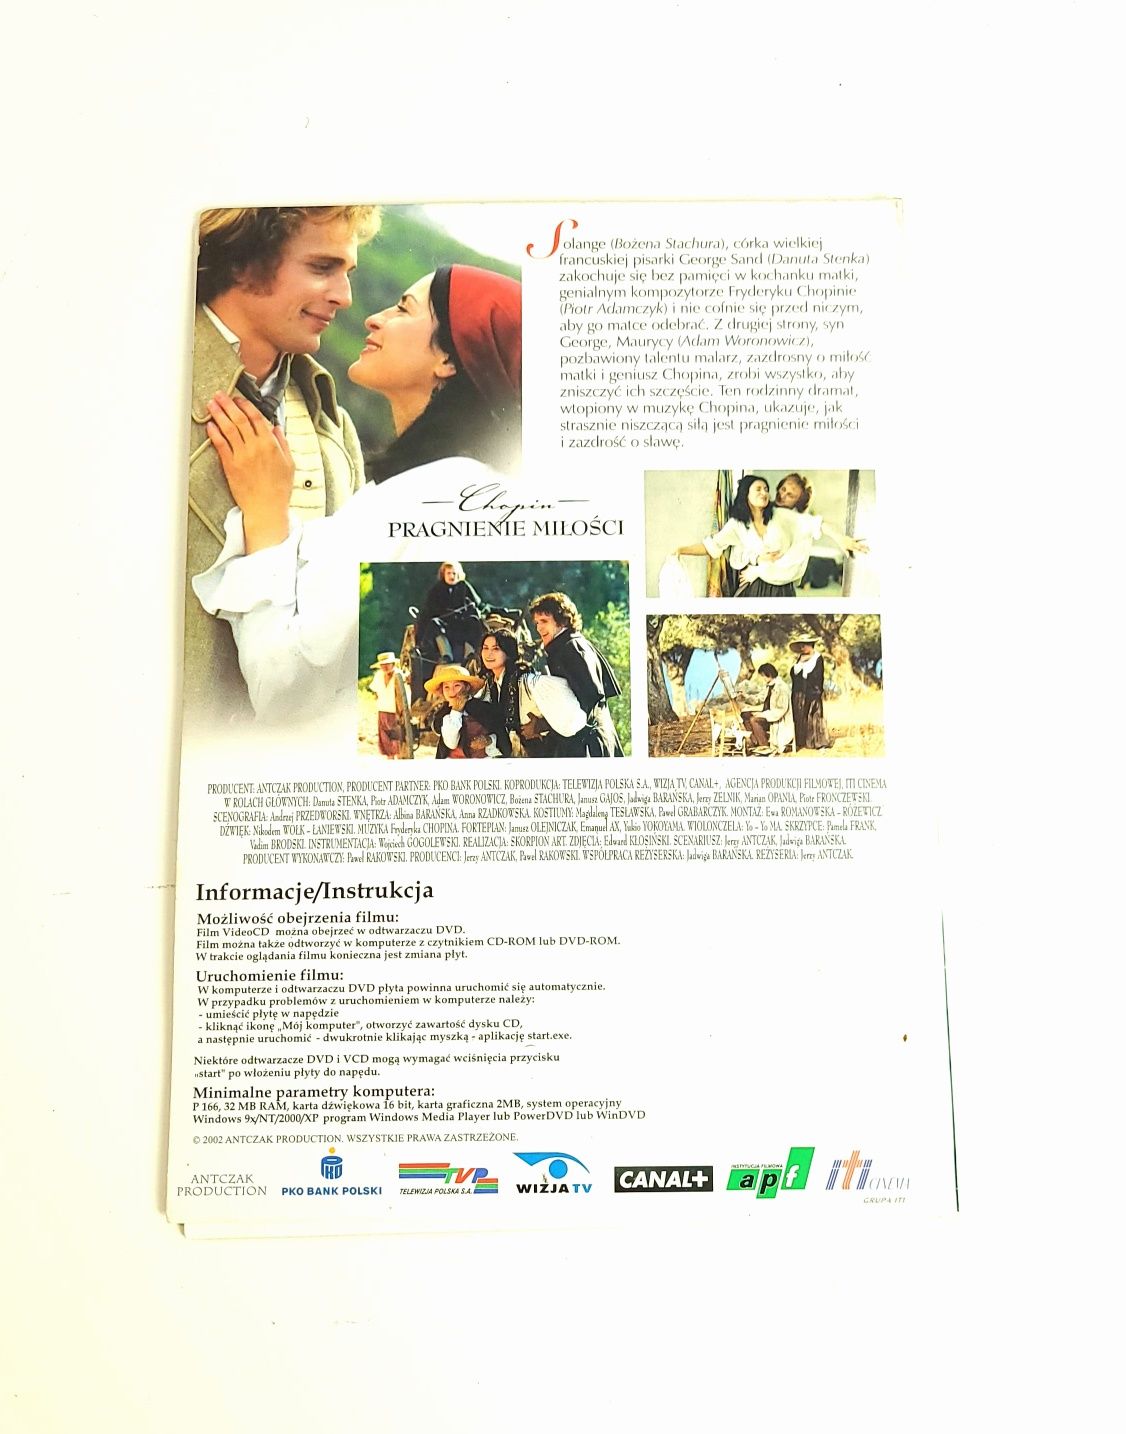 Chopin Pragnienie miłości Wielka kolekcja filmowa dvd